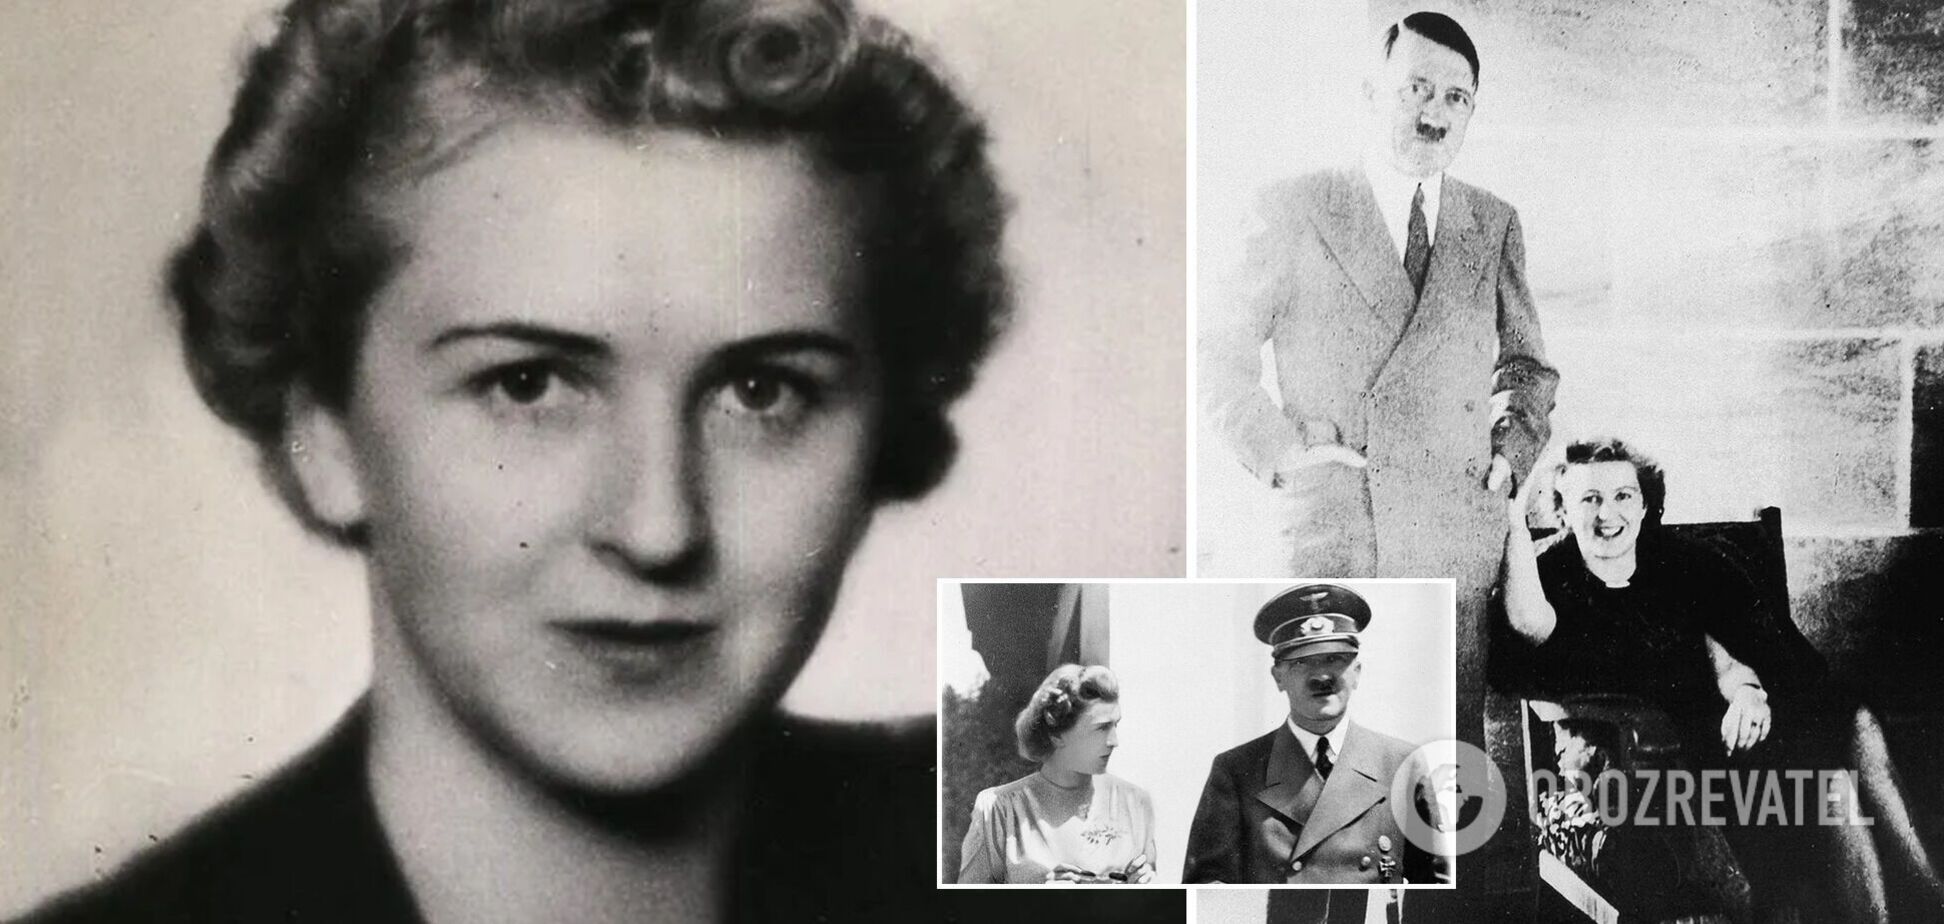 Любовь к Гитлеру для Евы Браун была болезненной